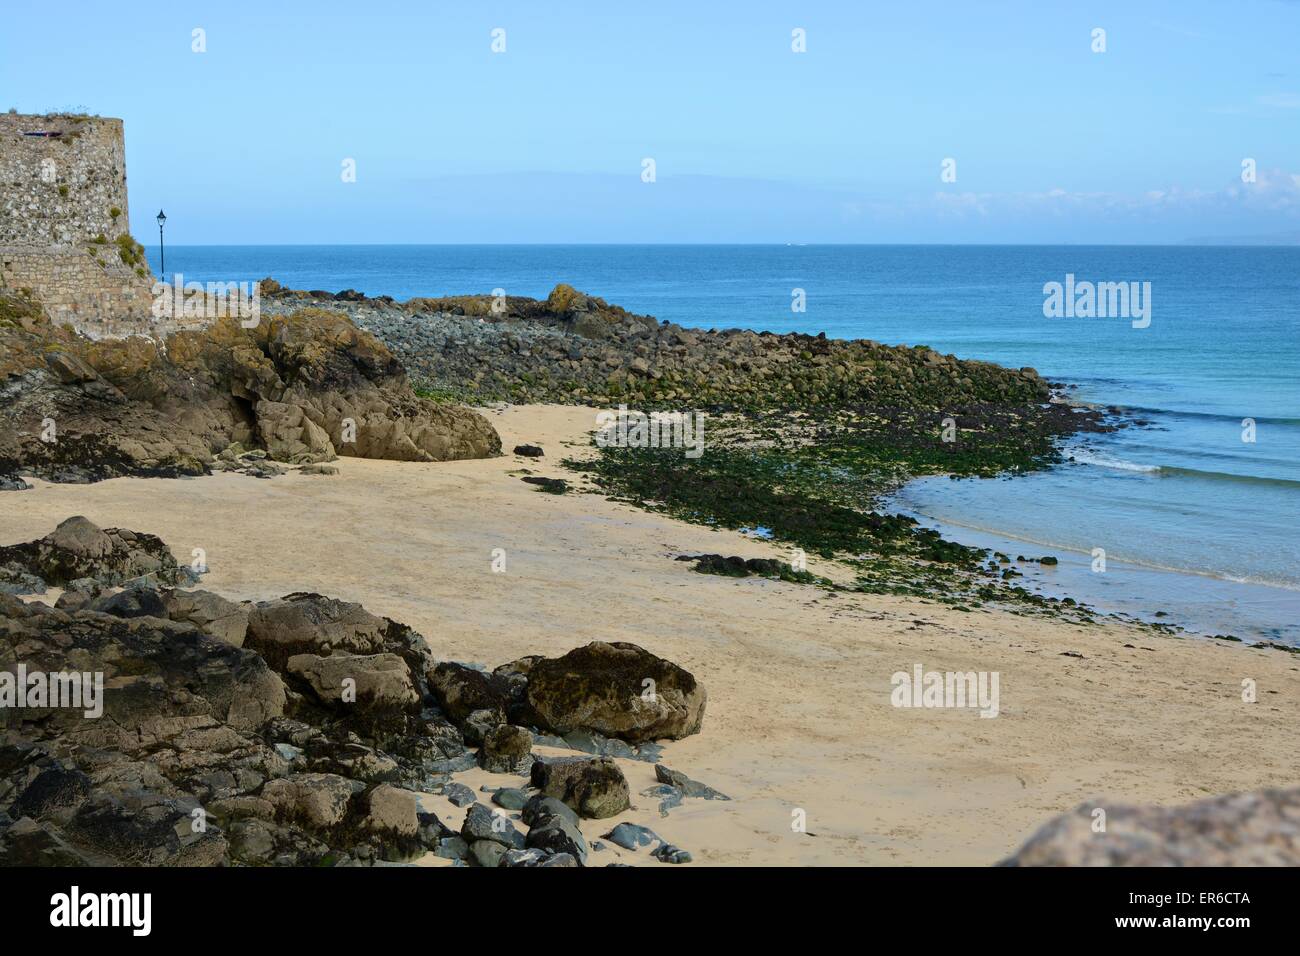 Beach, rocks and sea at Saint Ives. Cornwall. England Stock Photo